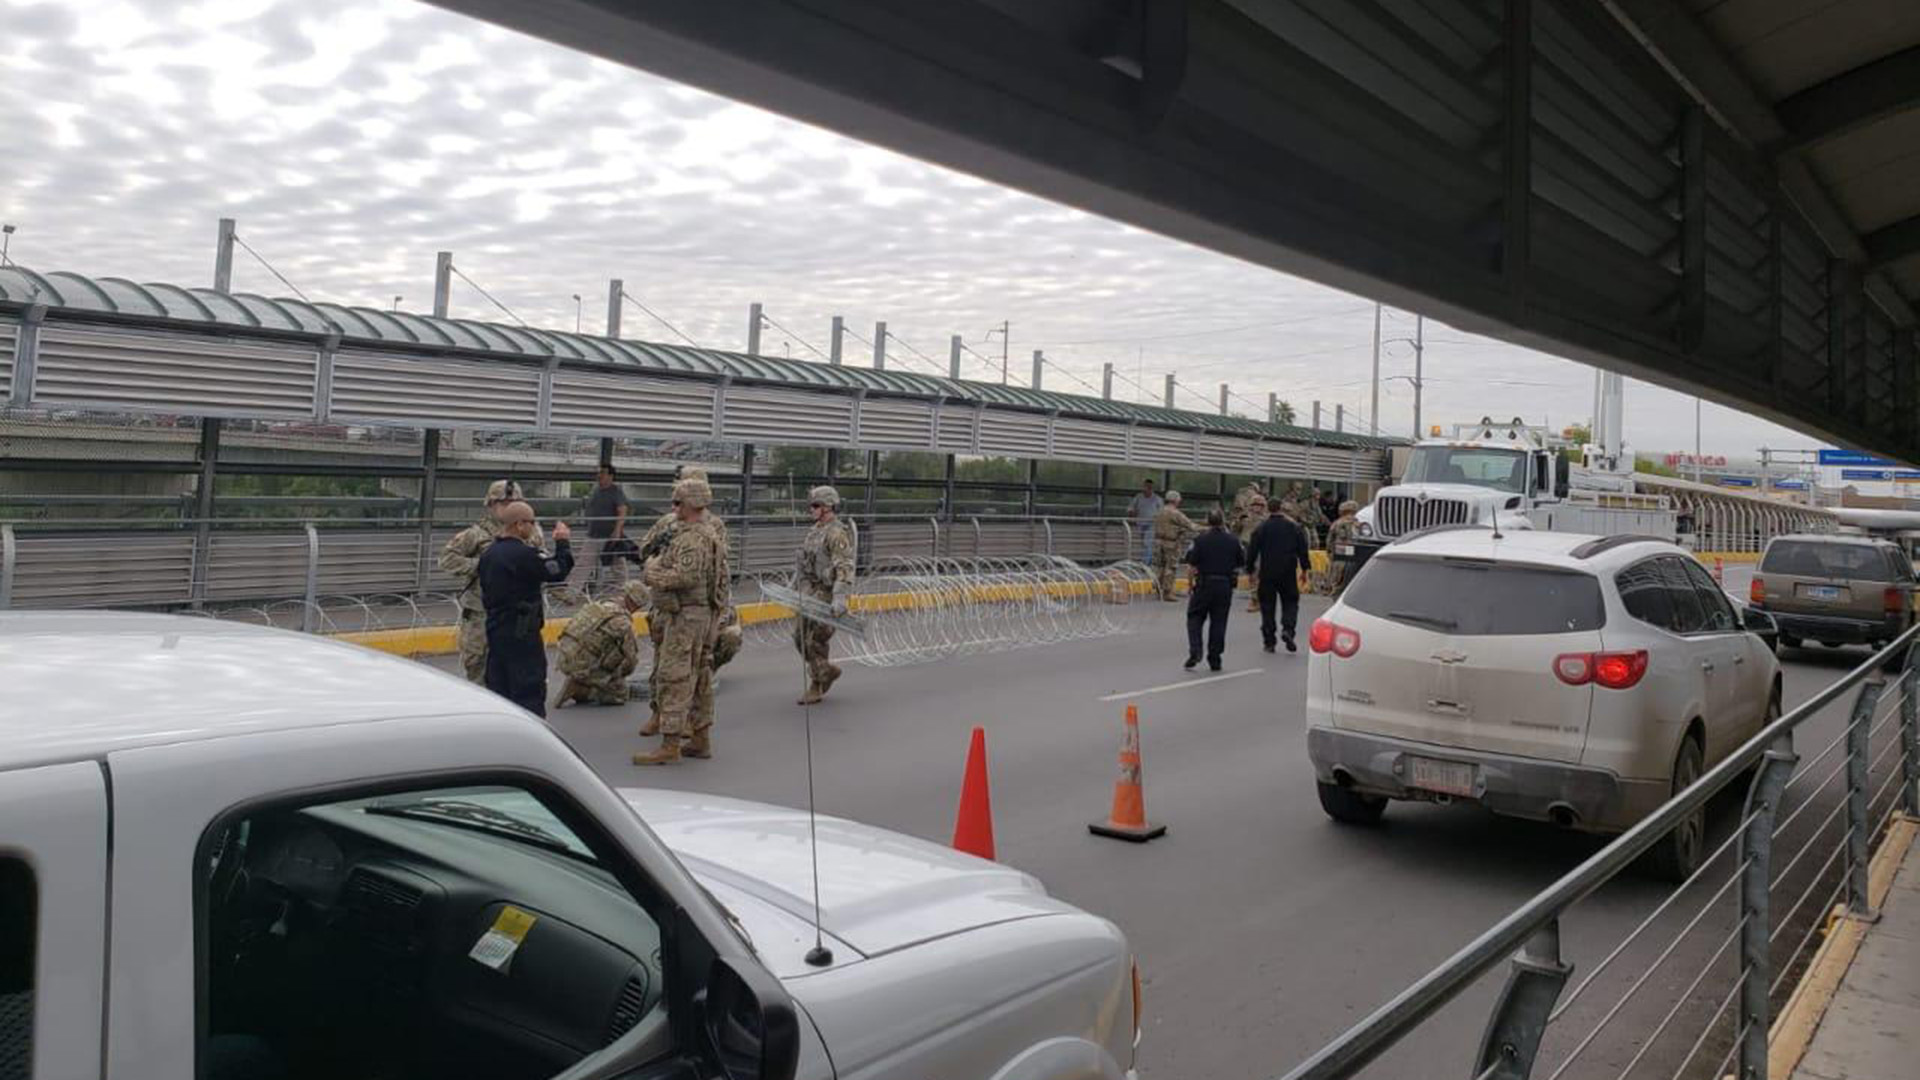 Parte delos ejercicios que los automovilistas observaron en la frontera (Foto: @jalbert861)